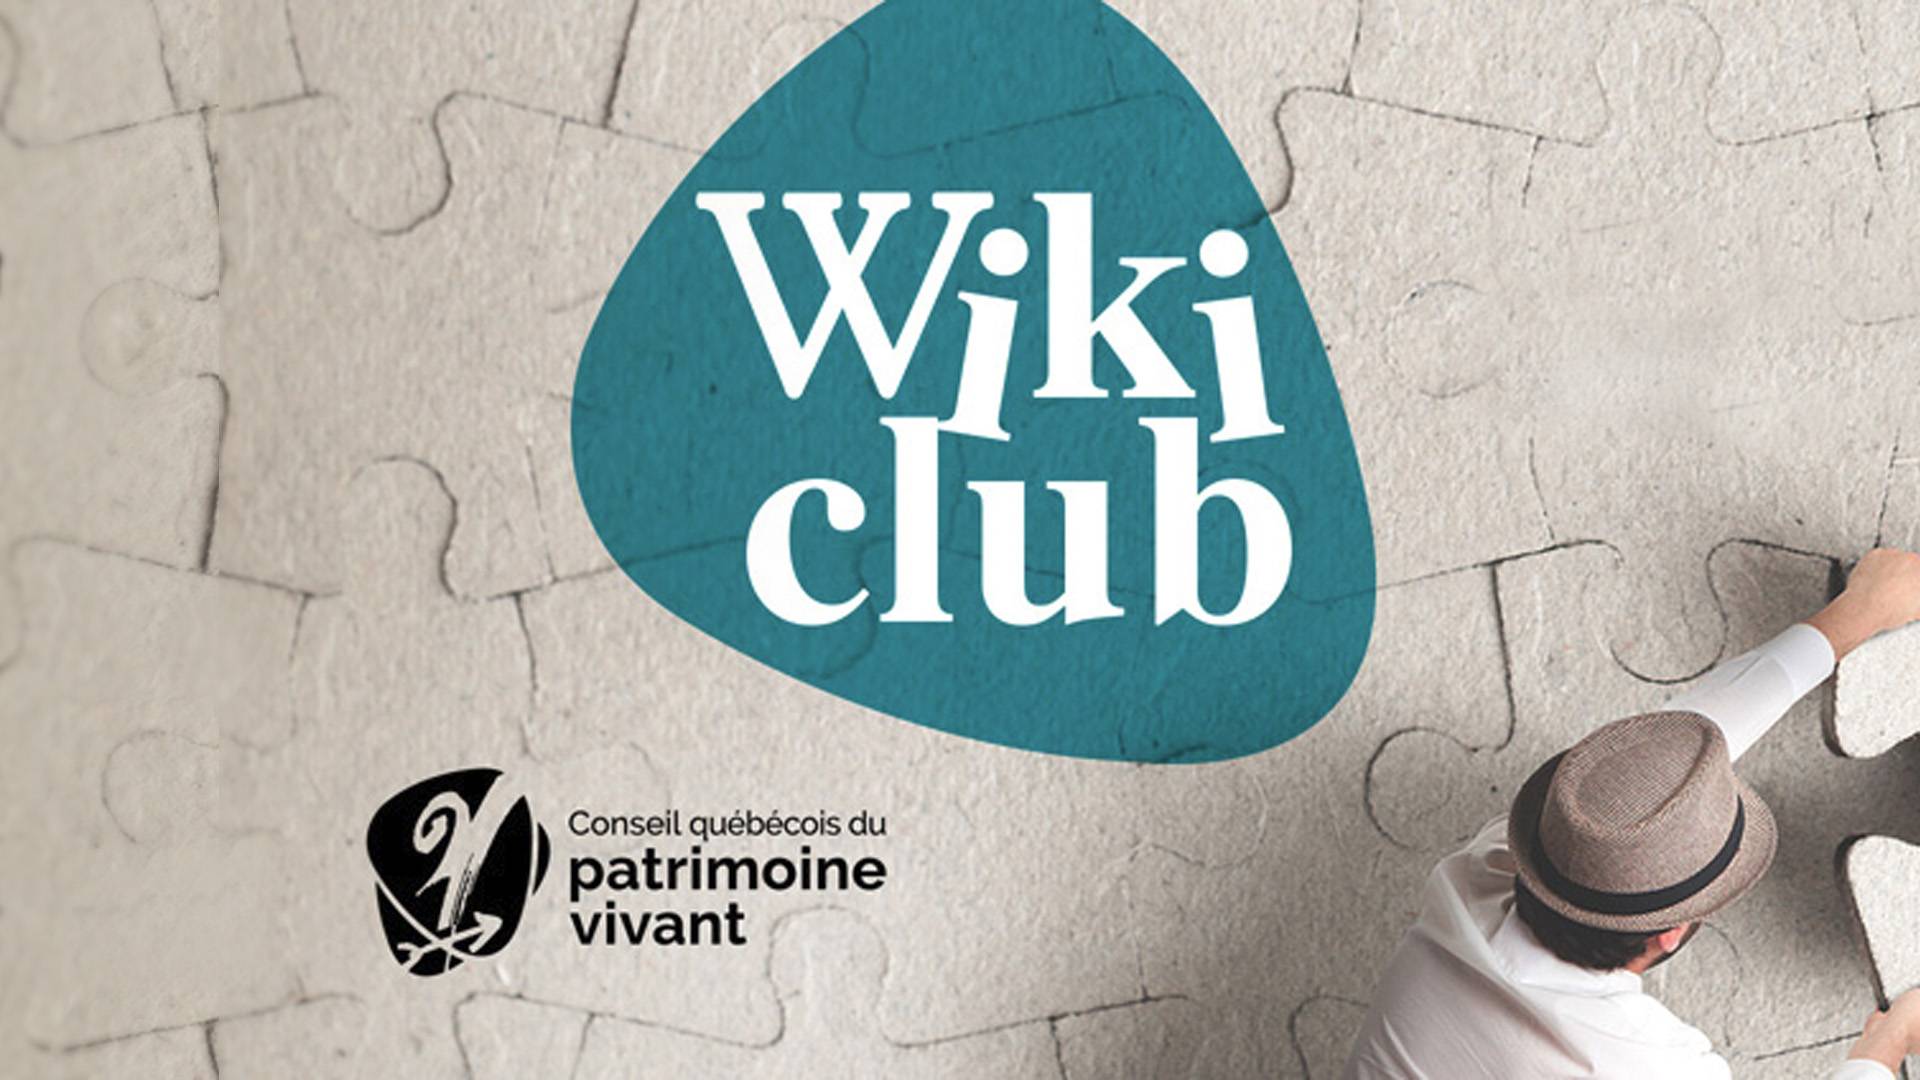 Conseil québécois du patrimoine vivant - Wiki-Club